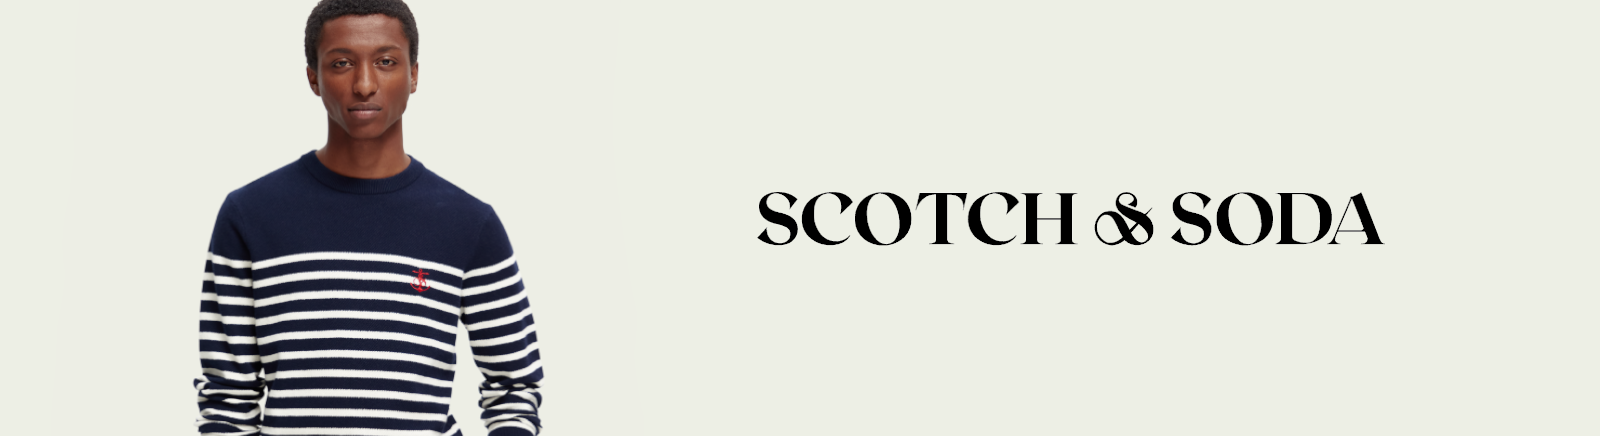 Scotch & Soda Boots für Damen im Online-Shop von GISY kaufen